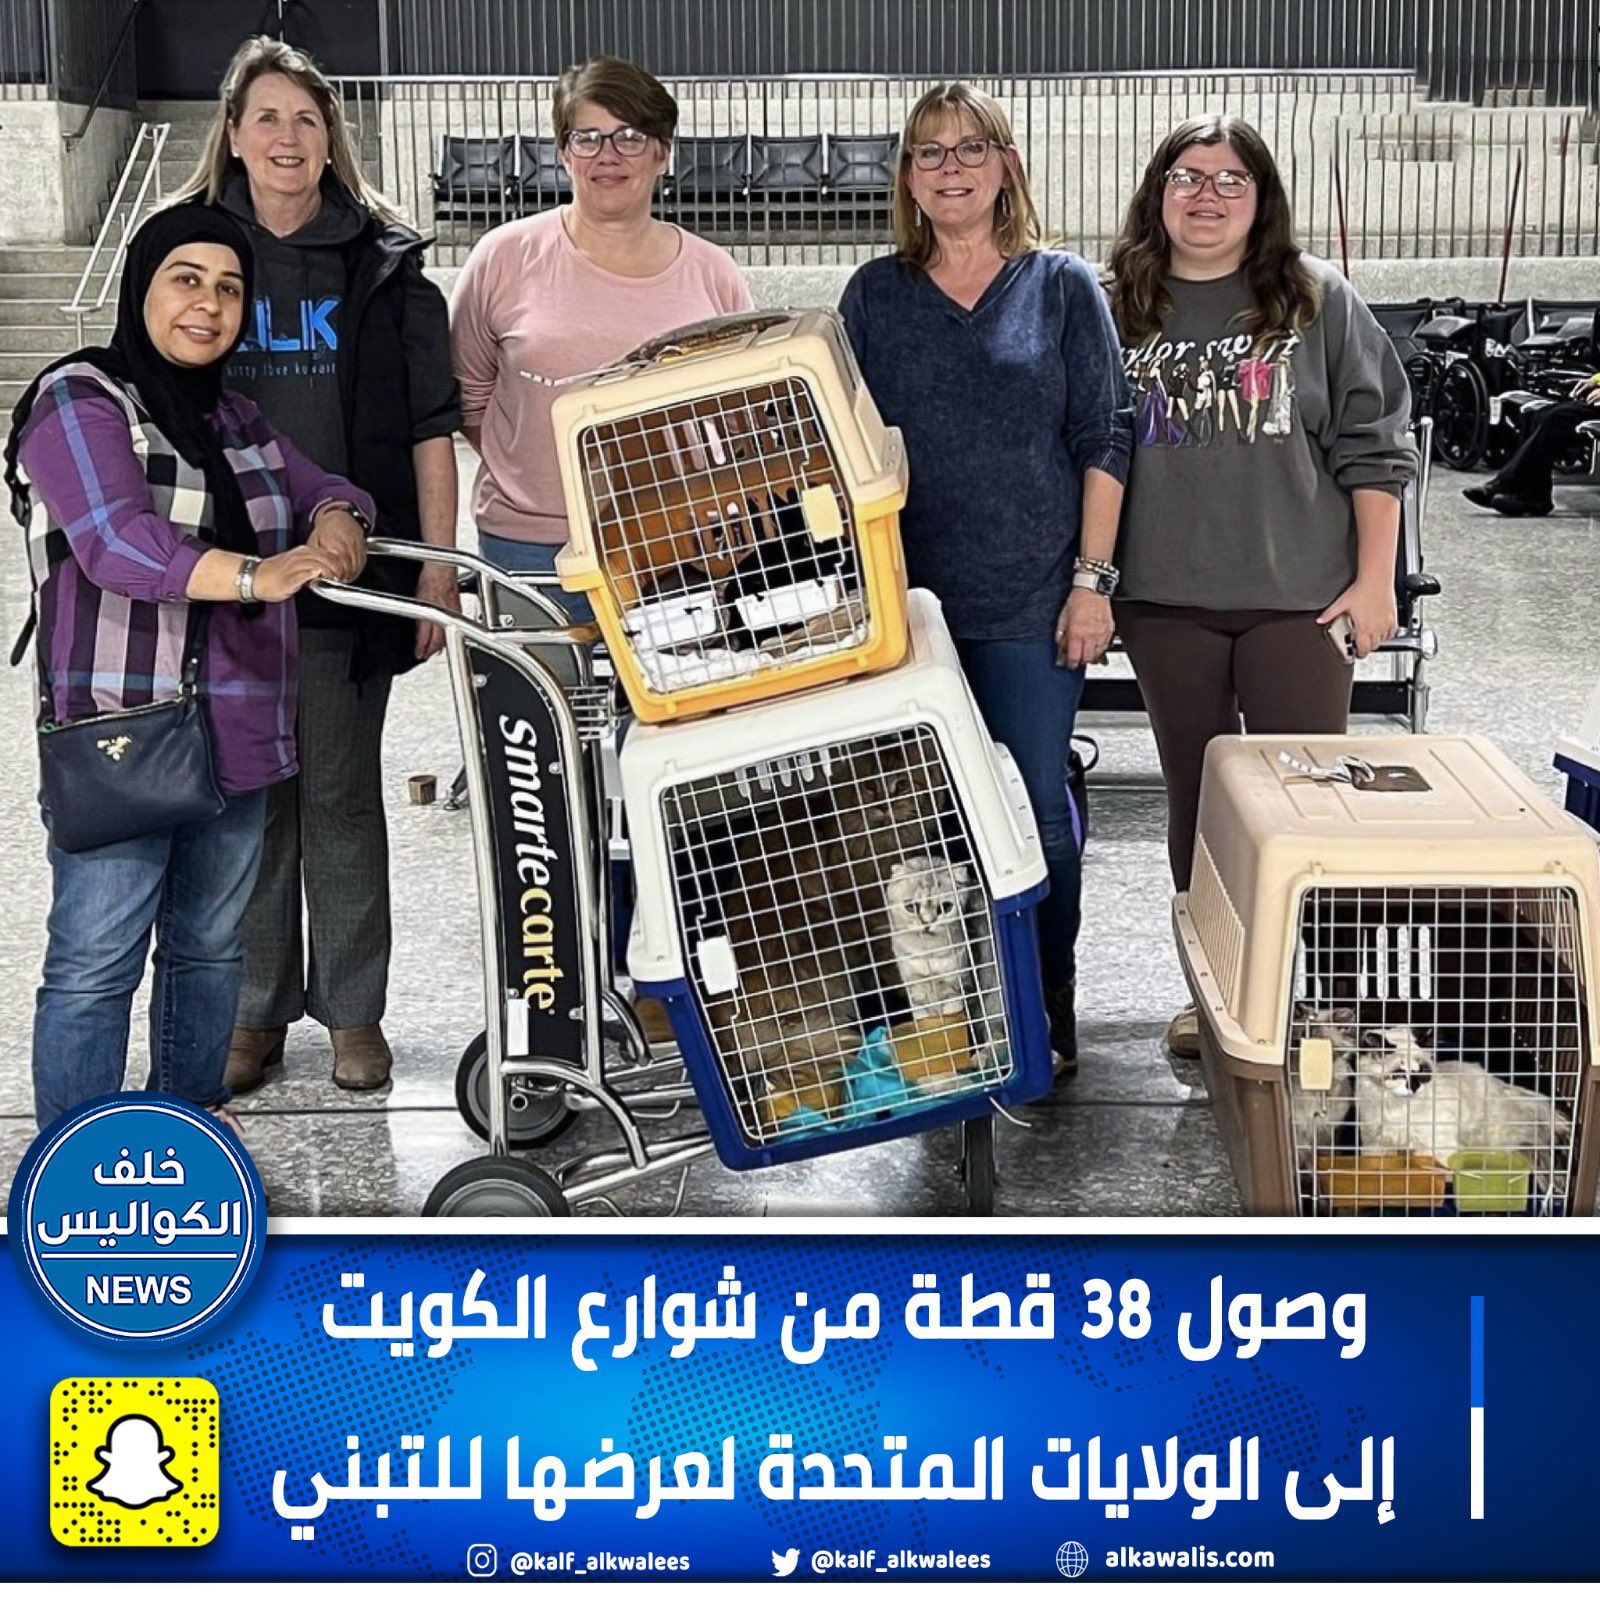 شحنة من القطط تصل مطار واشنطن دالاس الدولي في الولايات المتحدة الأمريكية بعد إنقاذها من شوارع الكويت. تم استقبال 38 قطة من أصل 89 كانت تعيش بظروف